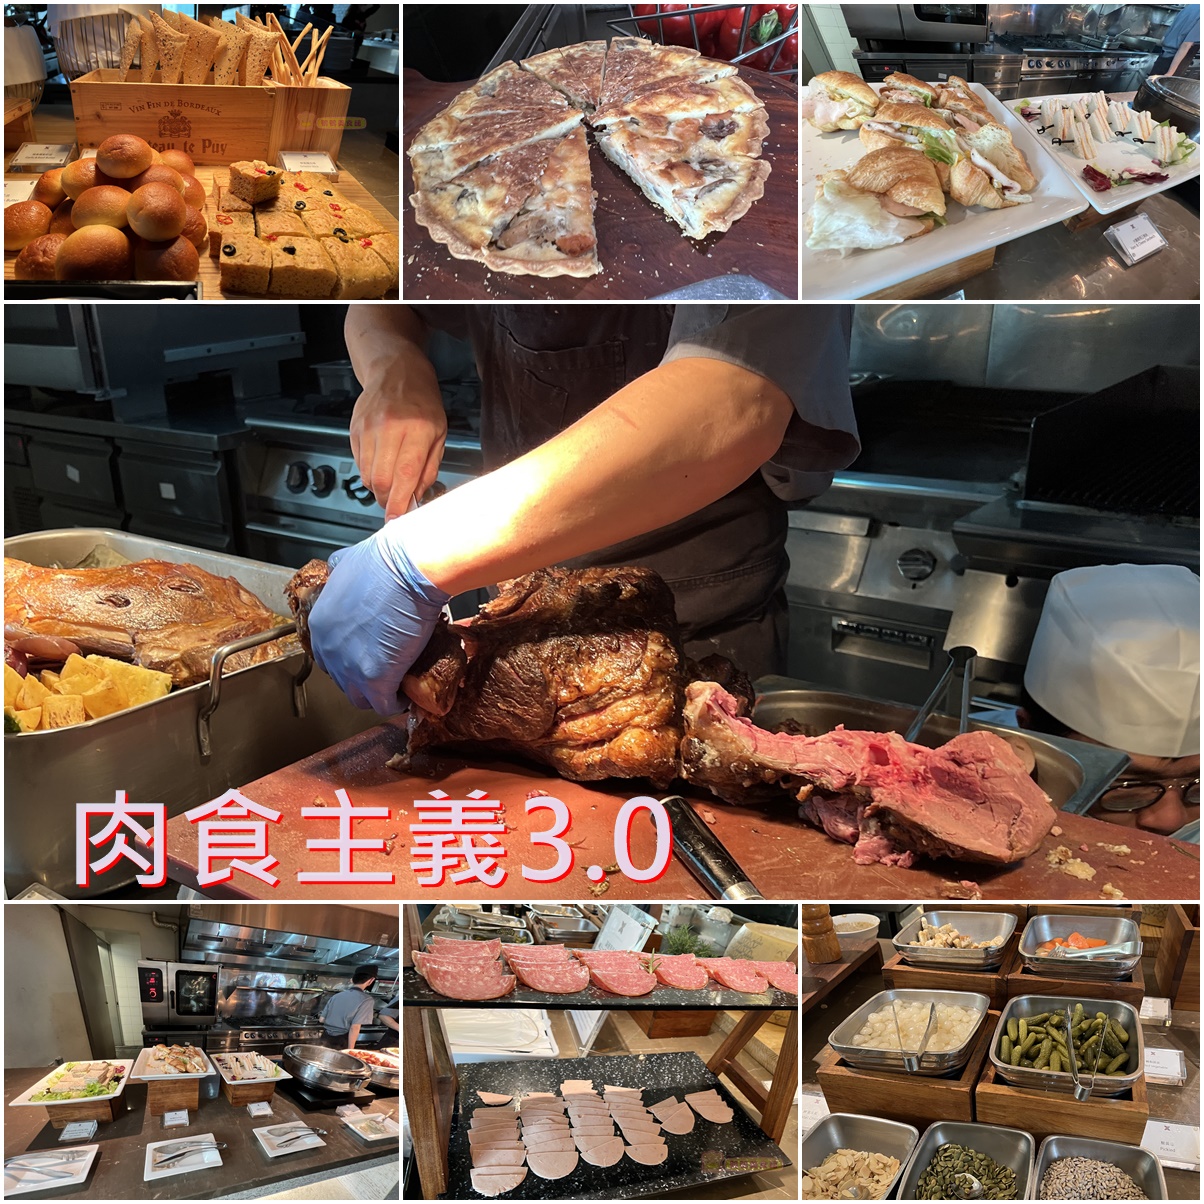 今日熱門文章：(4)台北信義區。寒舍艾麗LA FARFALLA 義式餐廳~肉食主義3.0假日下午茶牛排吃到飽，羊排第一名